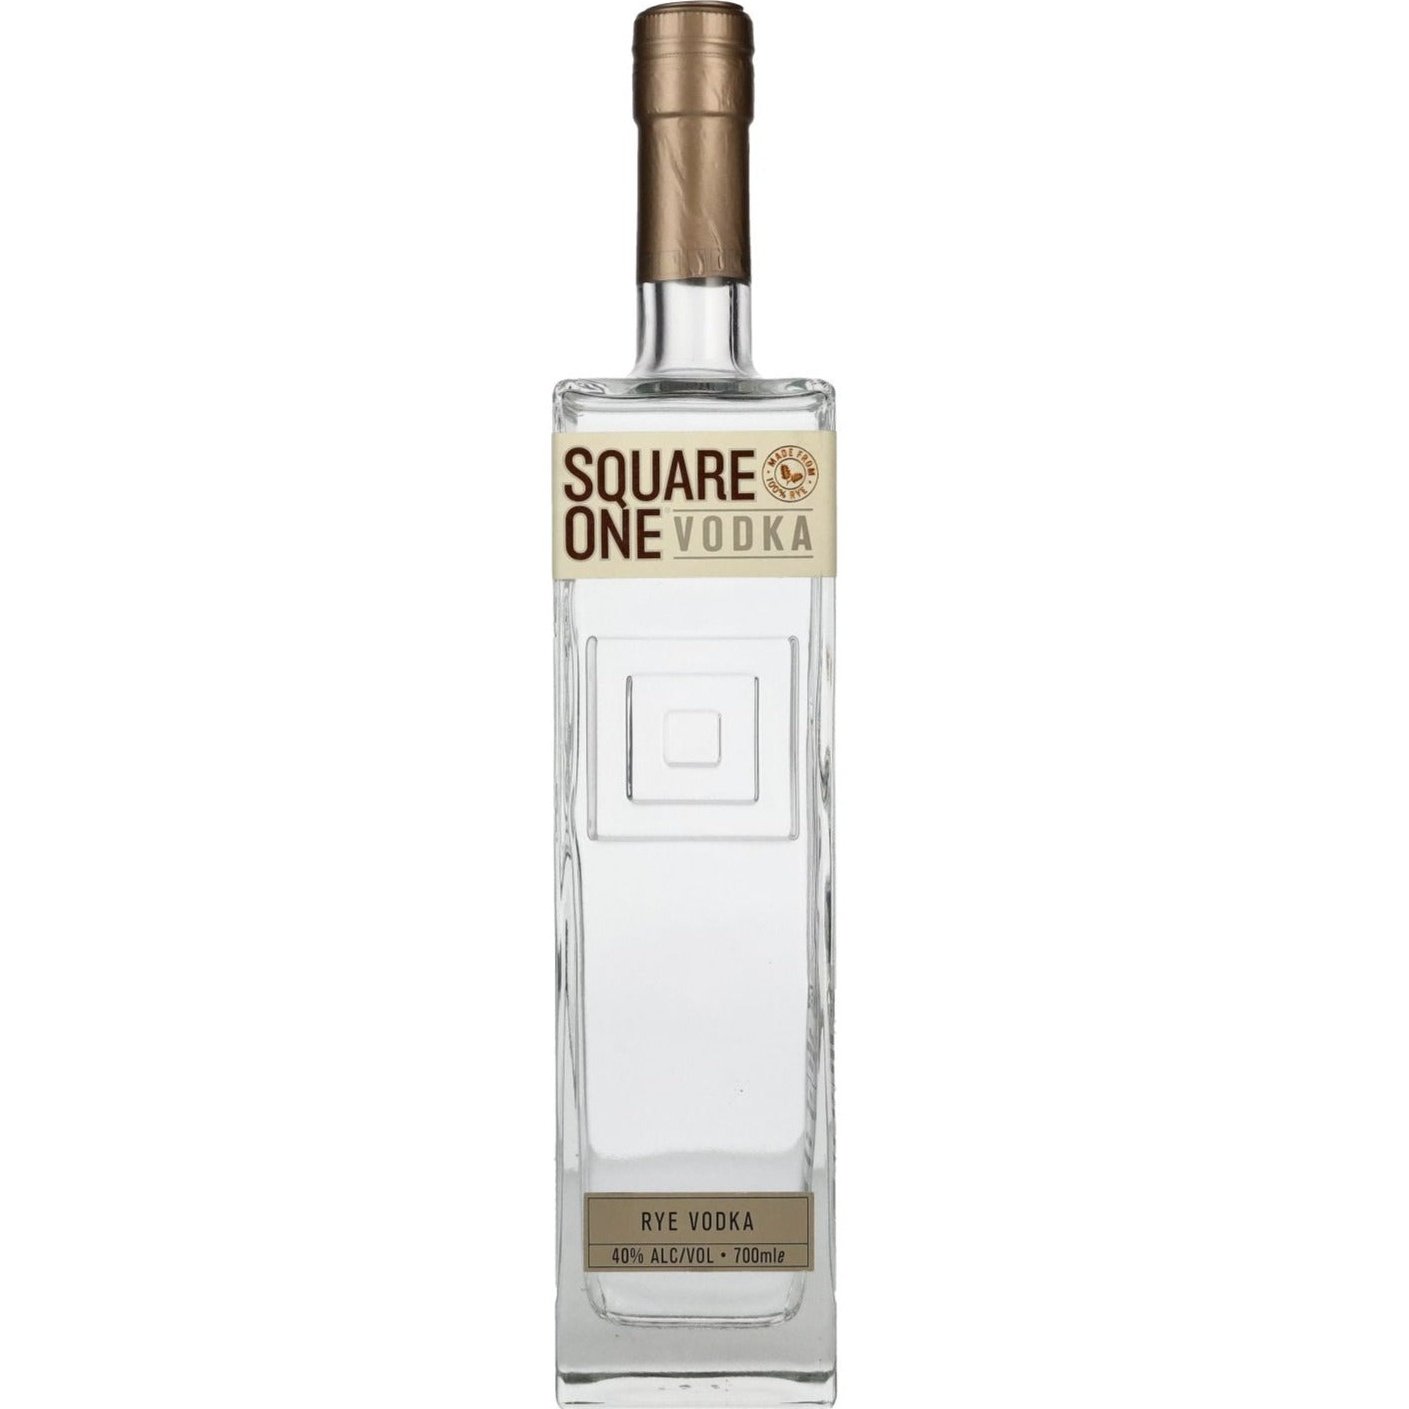 Square One Rye Vodka